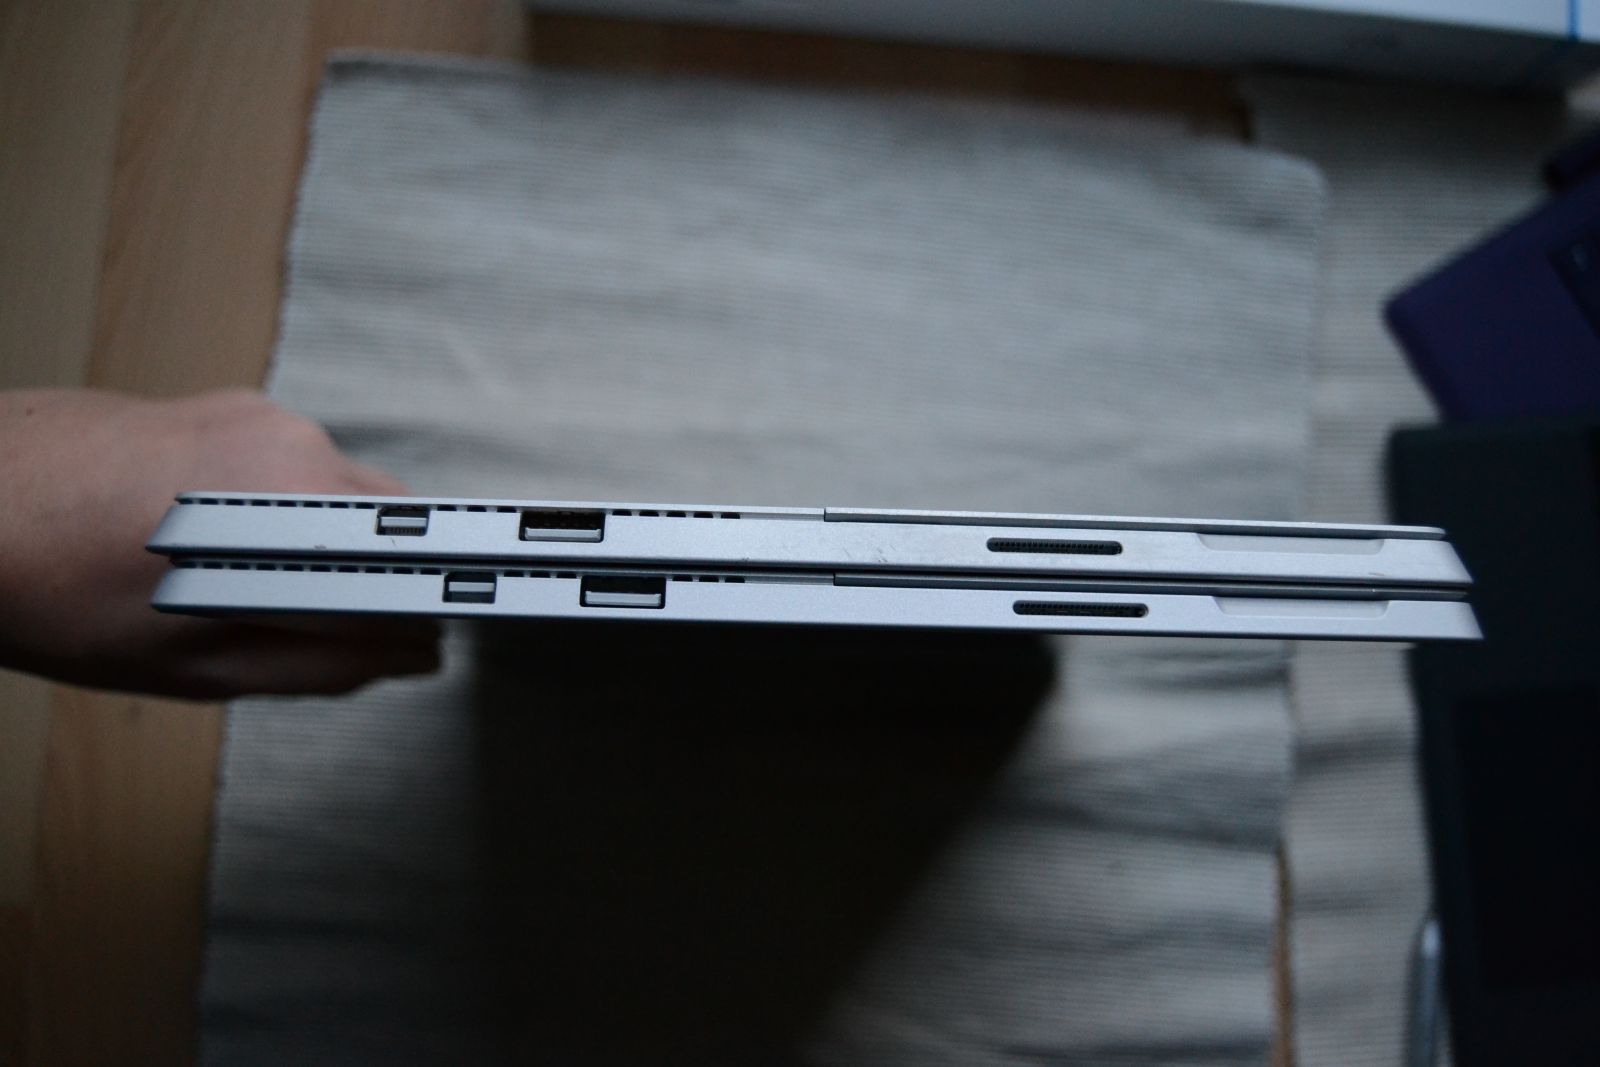 Surface Pro 4 vs Surface Pro 3 - Anschlüsse